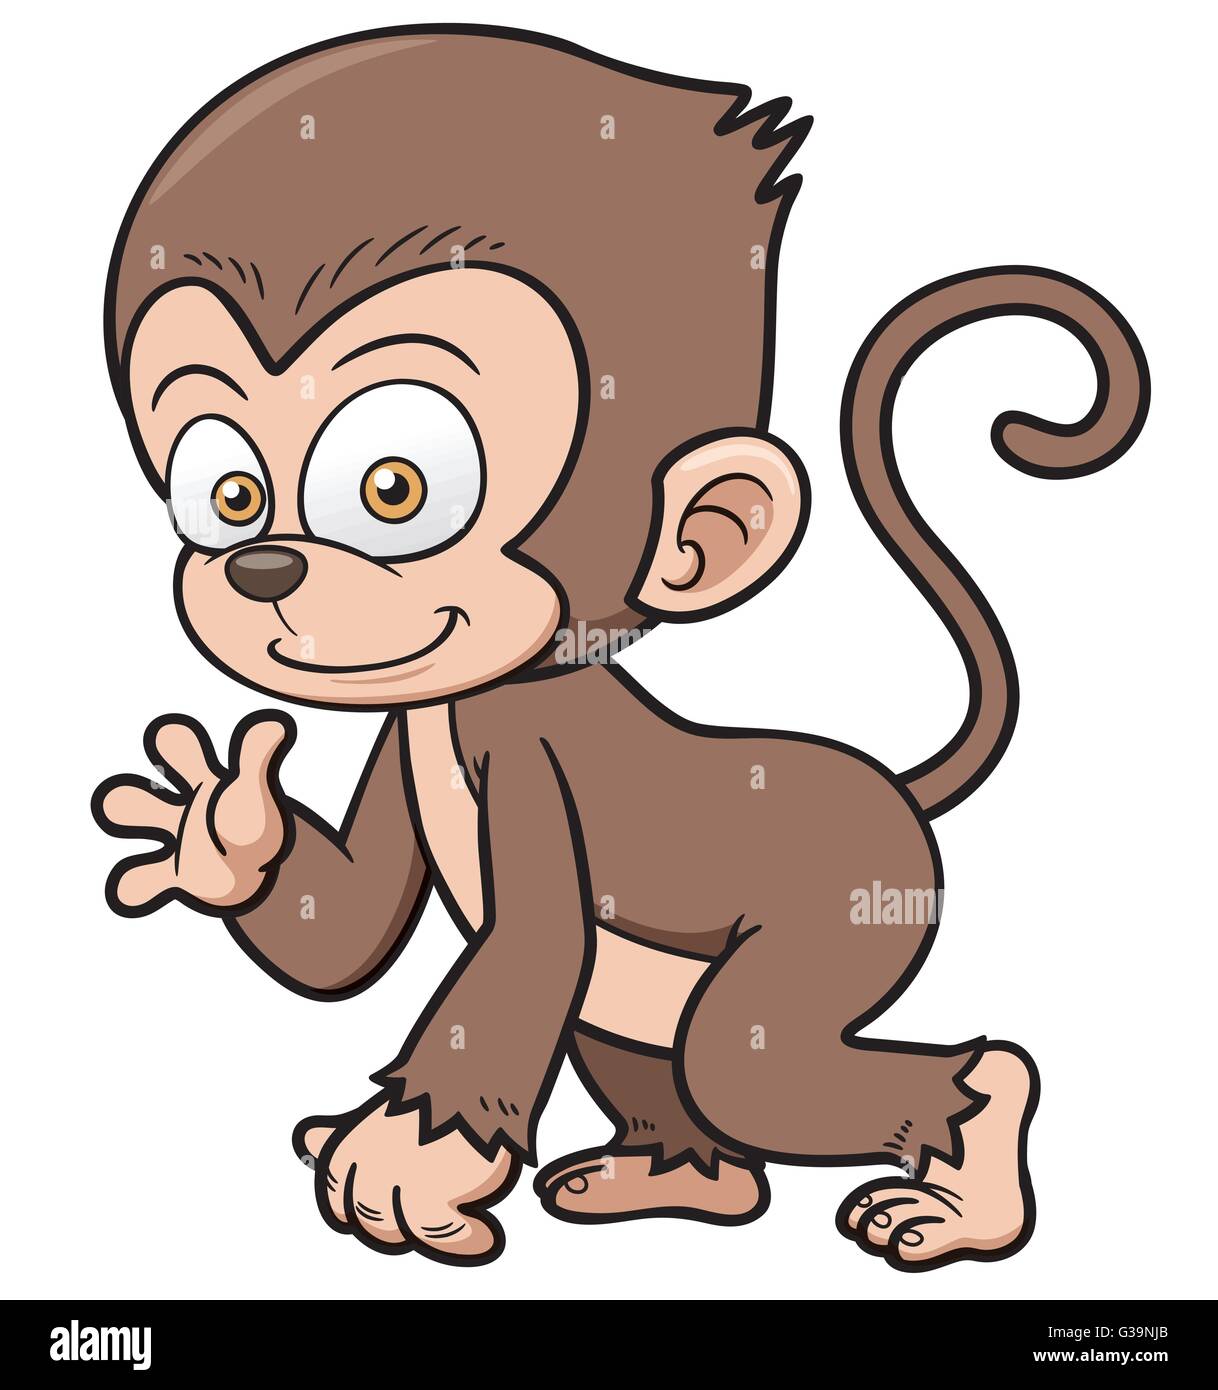 Illustration Vecteur de Cartoon Monkey Illustration de Vecteur